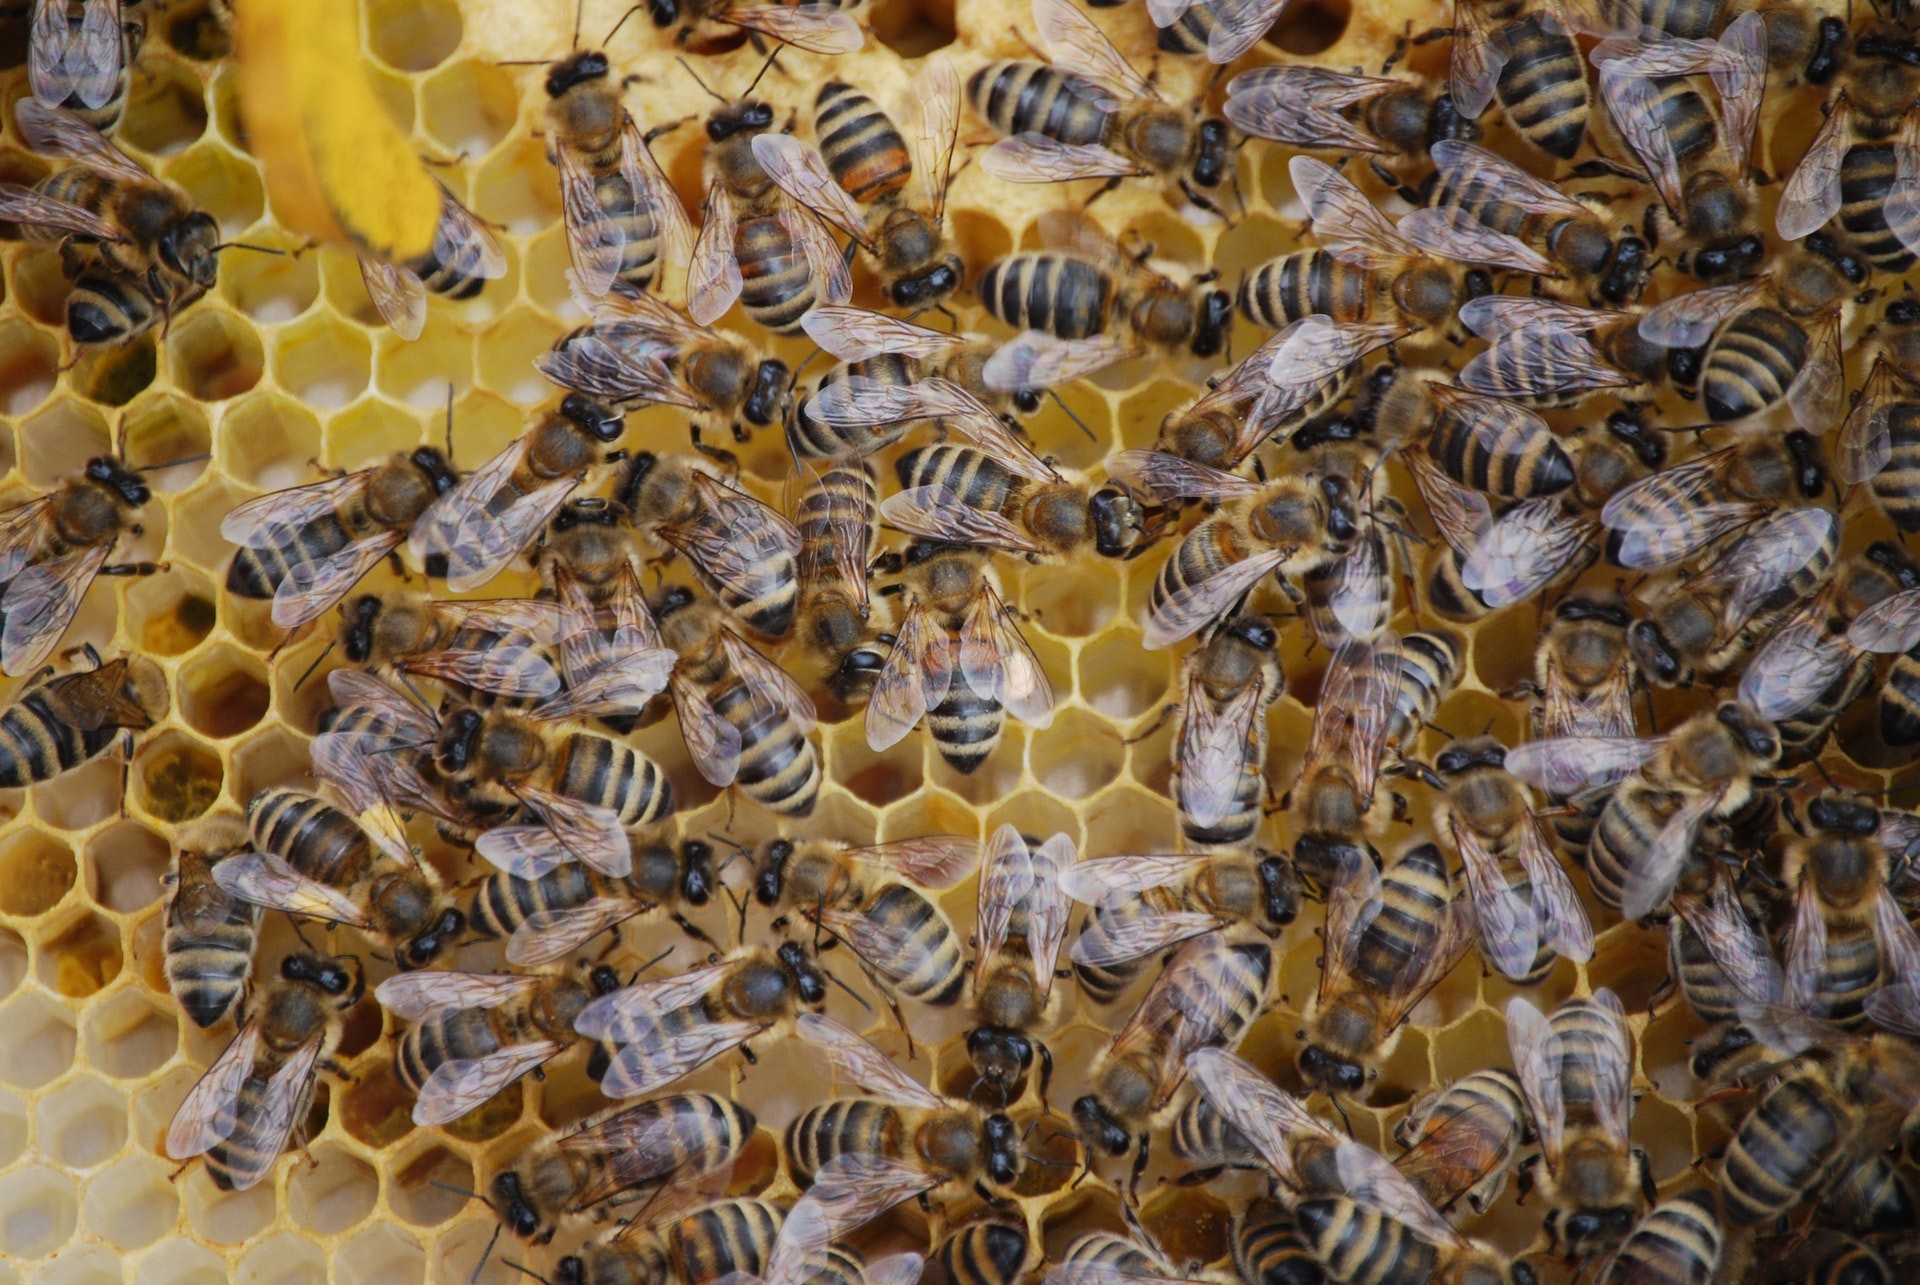 Nos últimos anos, as abelhas viram redução considerável em suas populações, devido a fatores como poluição e mudança climática (Foto: Pexels/  Jade/ CreativeCommons)